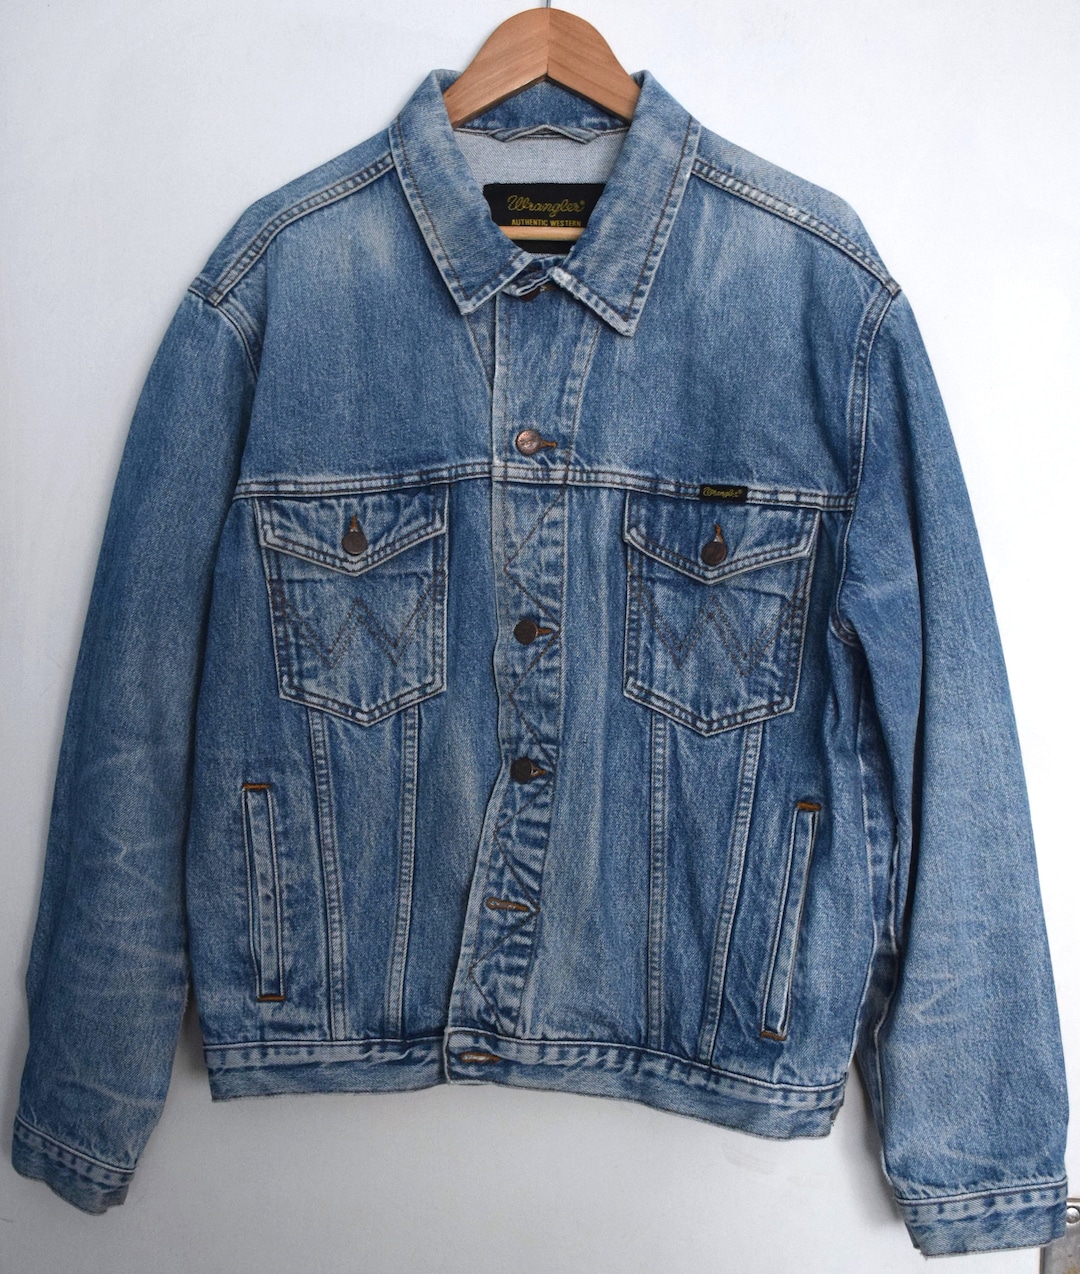 Vintage 90s Distressed Wrangler Denim Jacket Men's 90s - Etsy